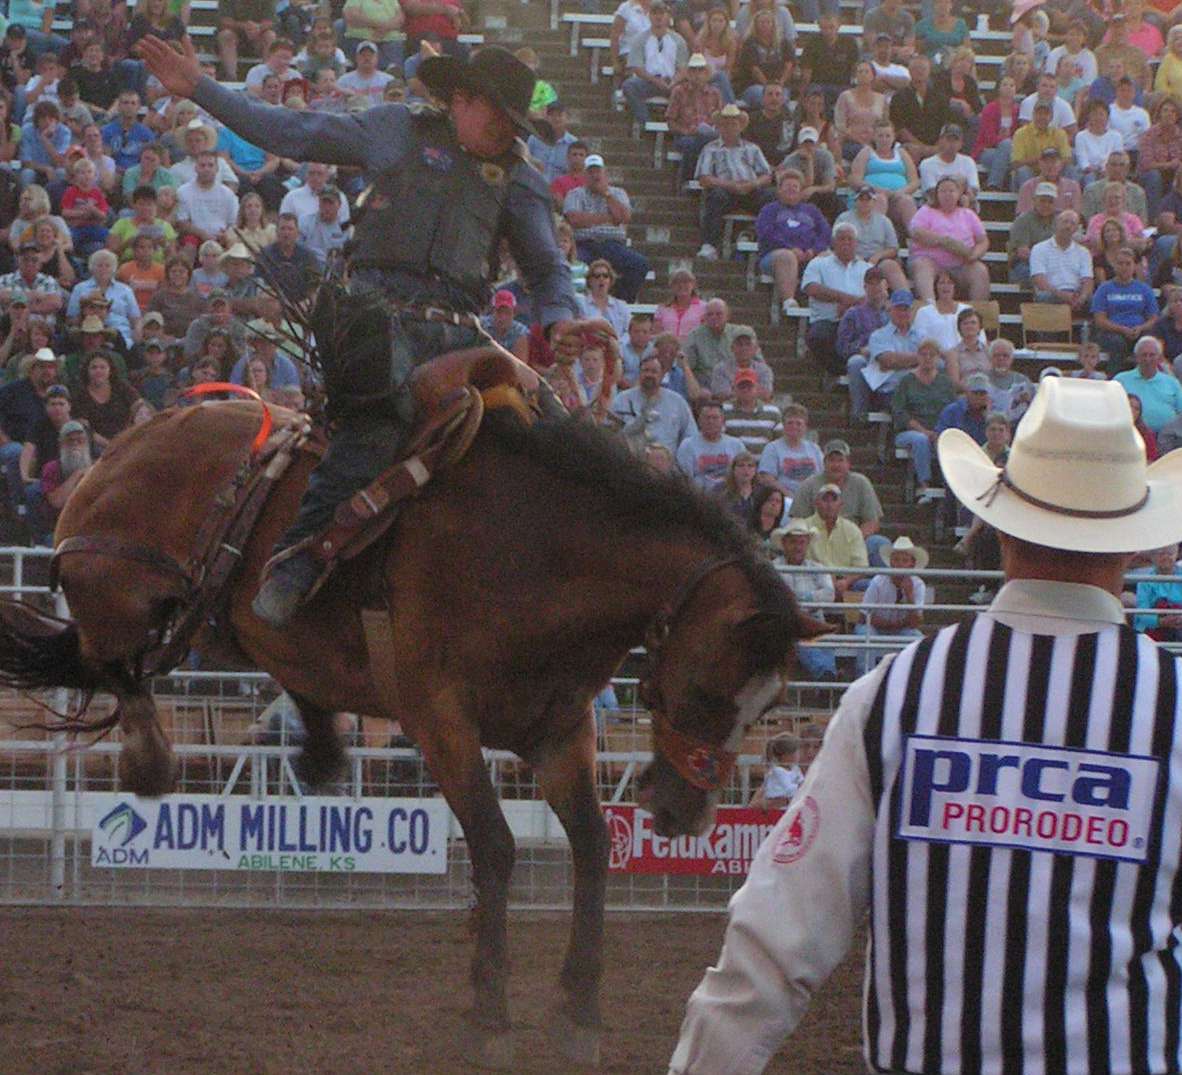 Annual Wild Bill Hickok PRCA Rodeo